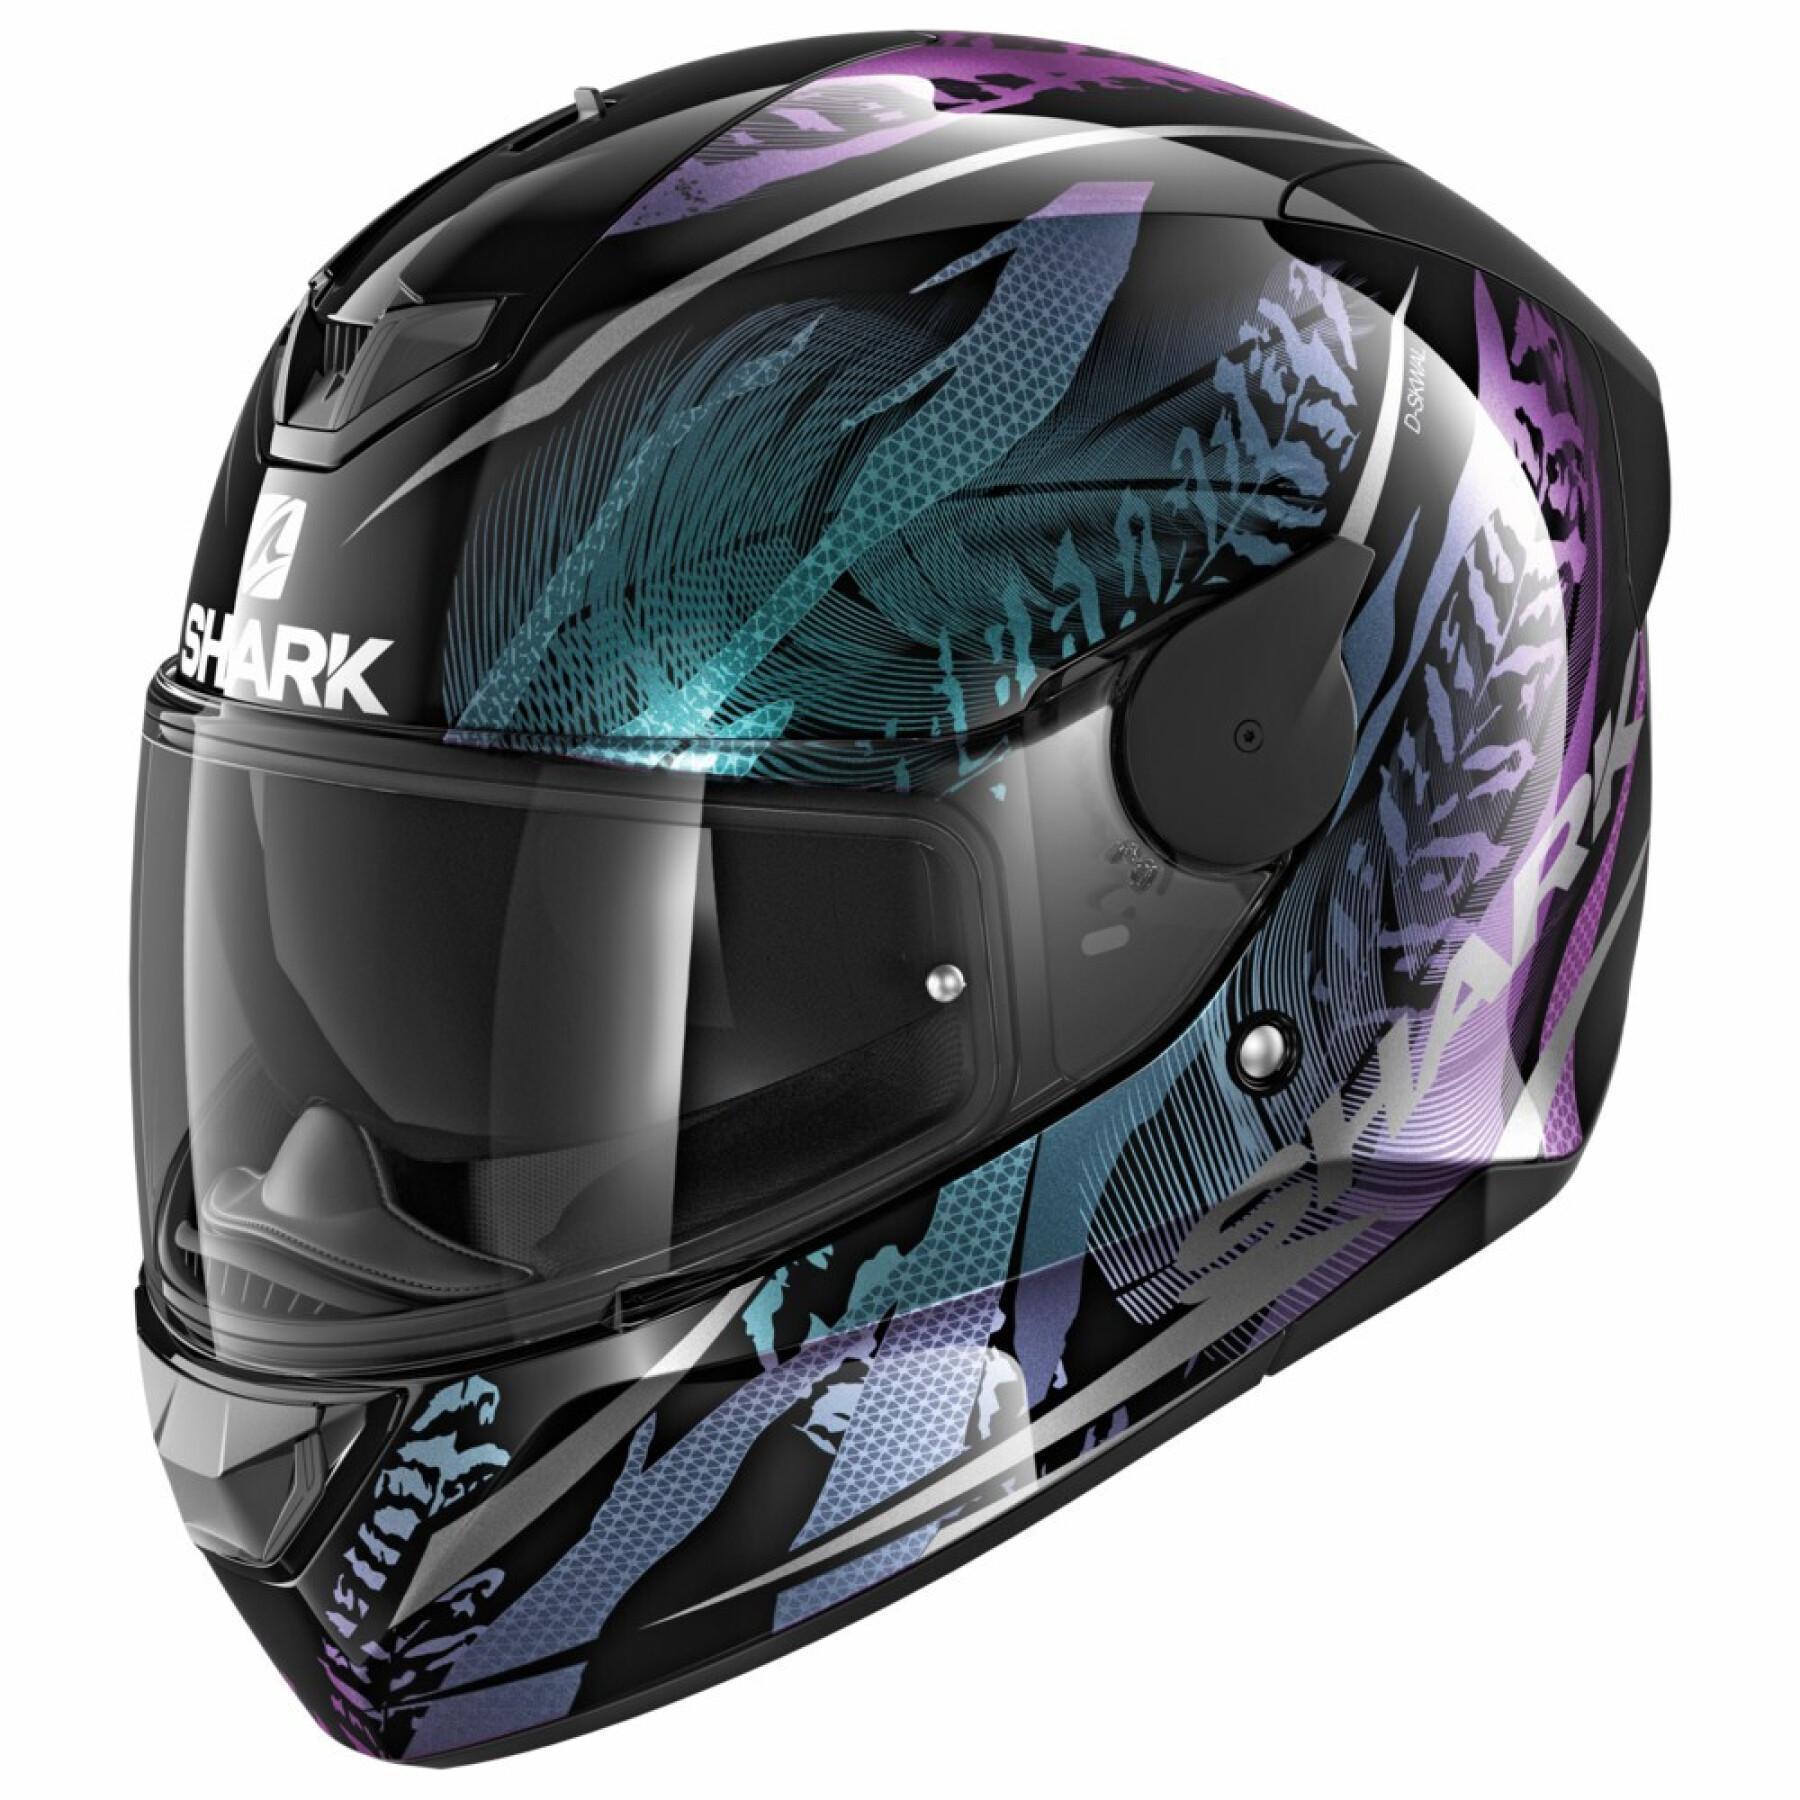 Full face motorcycle helmet Shark d-skwal 2 shigan